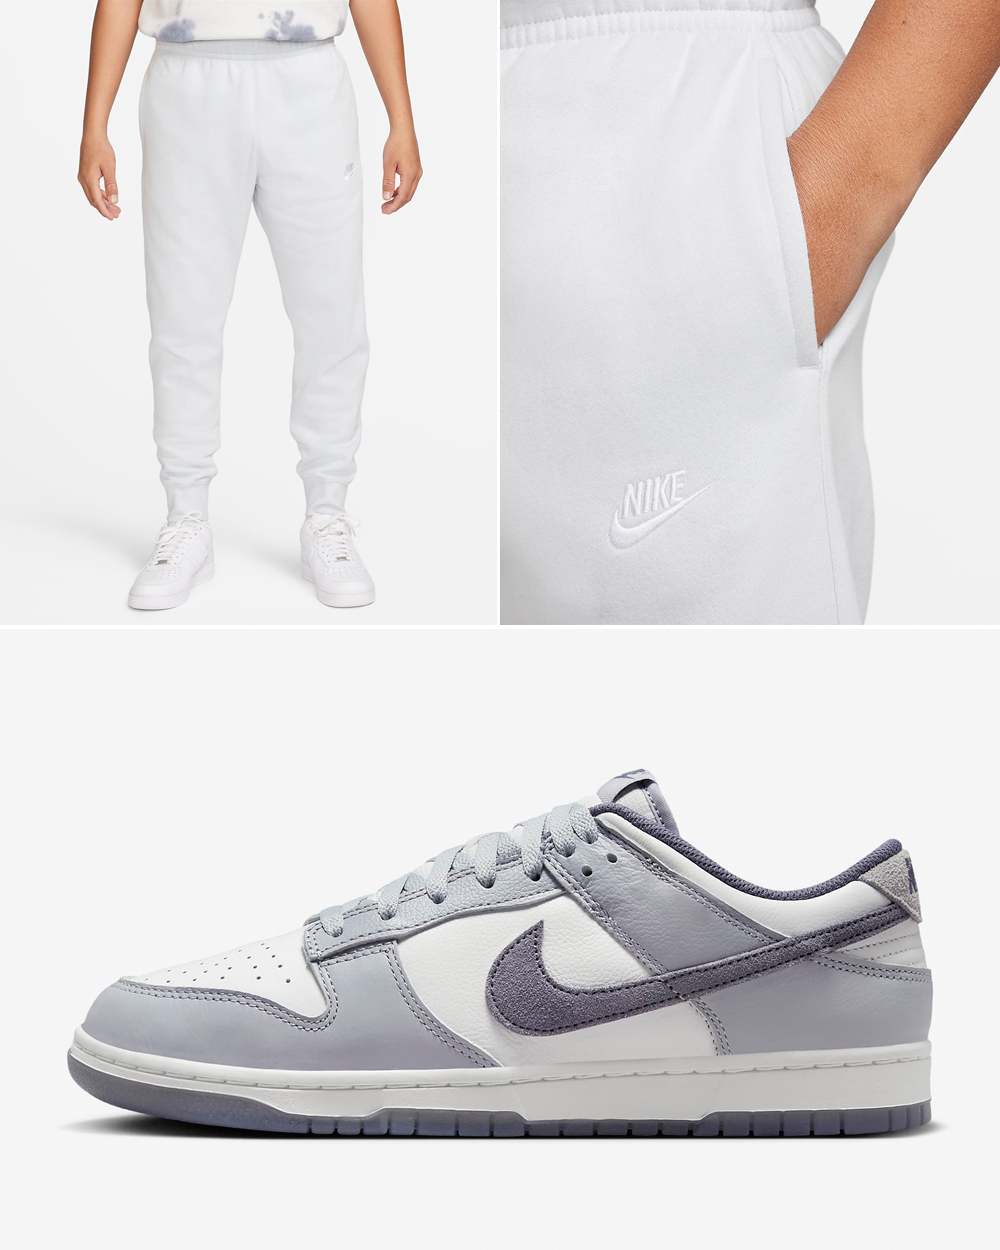 Nike-Dunk-Low-Light-Carbon-Fleece-Pants-Outfit